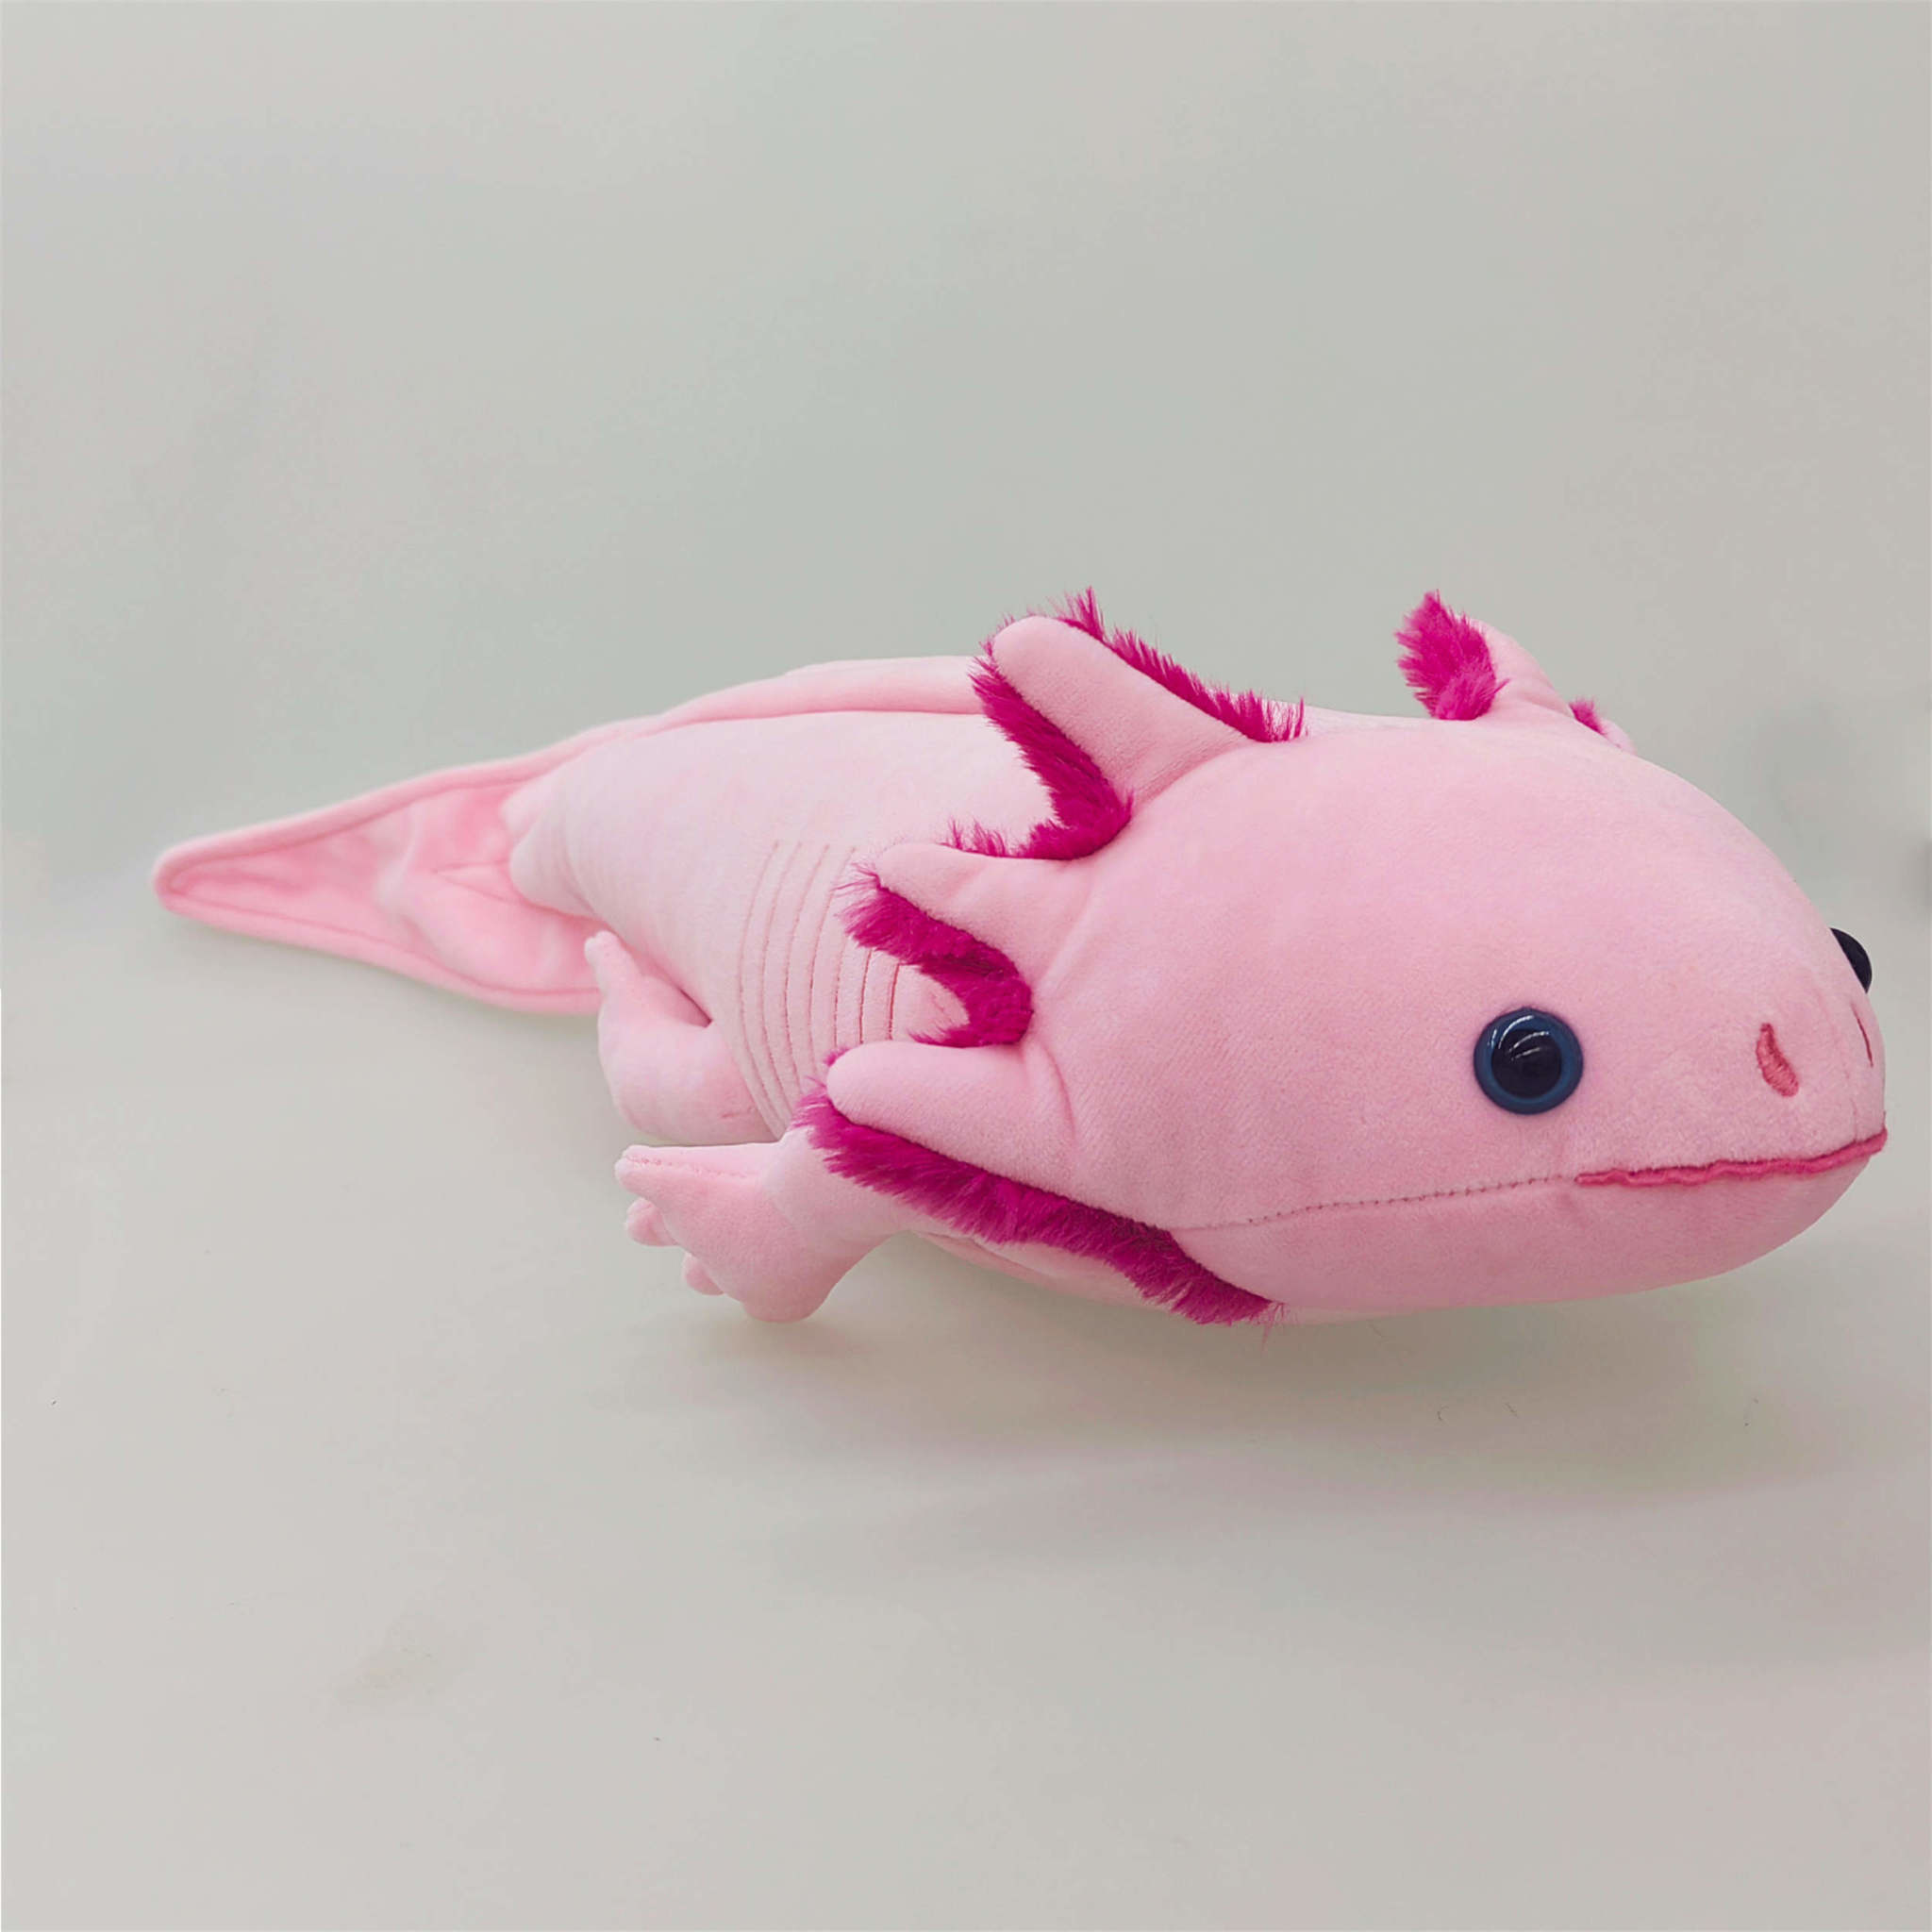 Giant Pink Axolotl Stuffed Animal